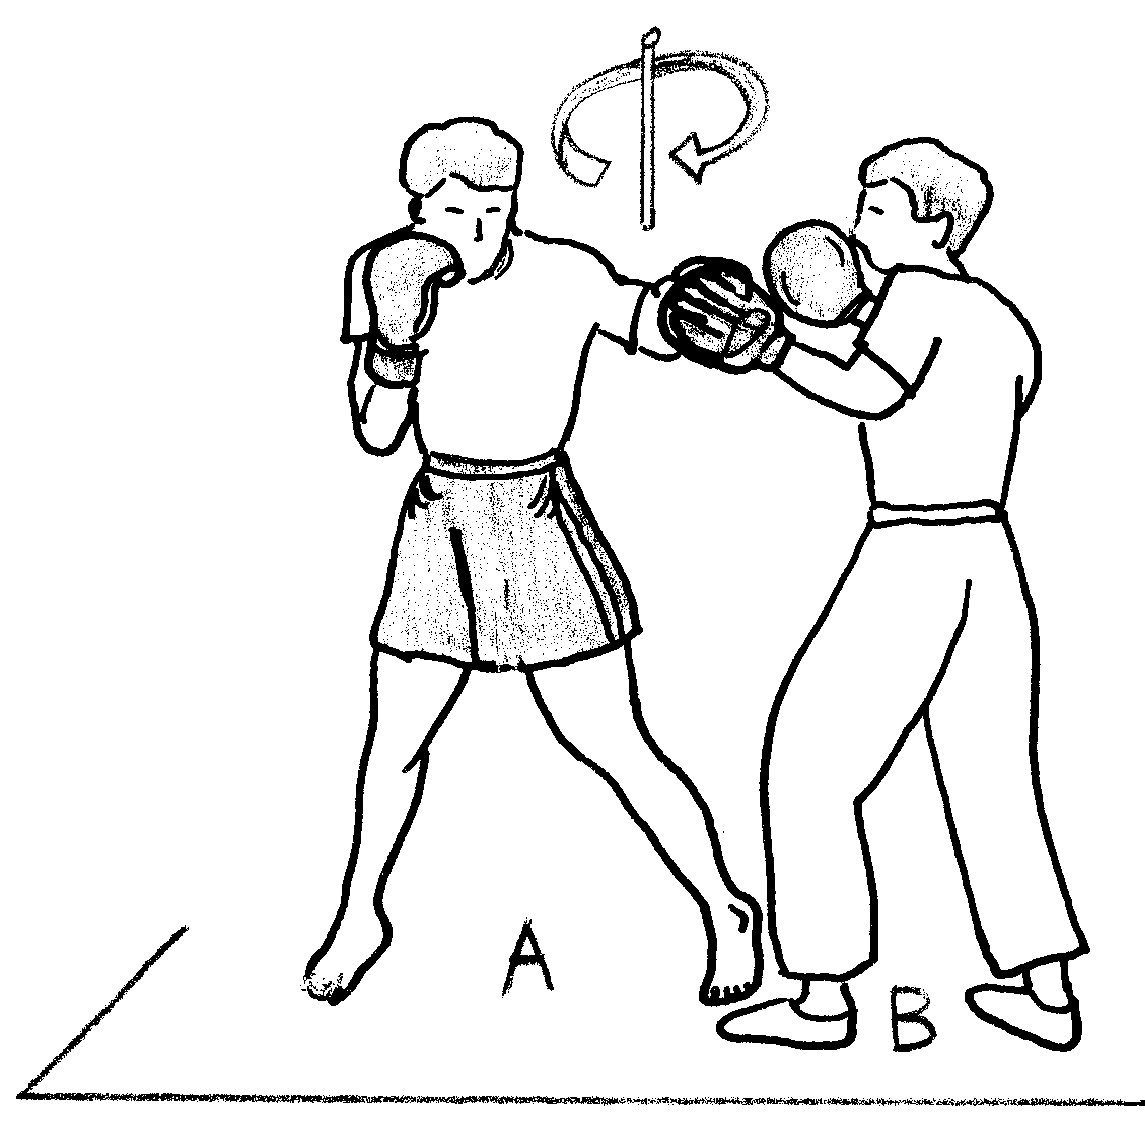 Движение ног в боксе